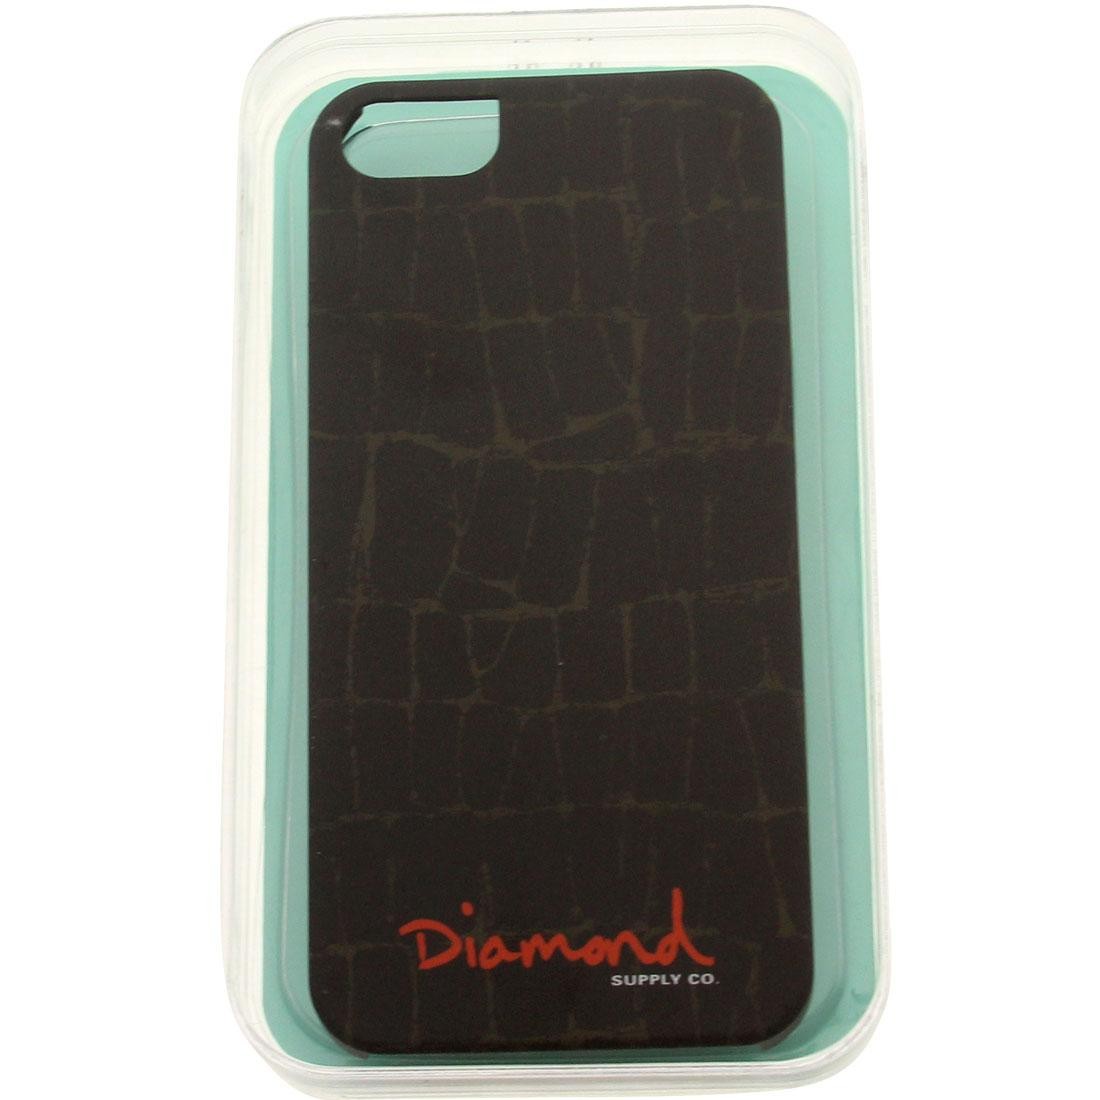 Diamond Supply Co Croc iPhone 5 Case (black)